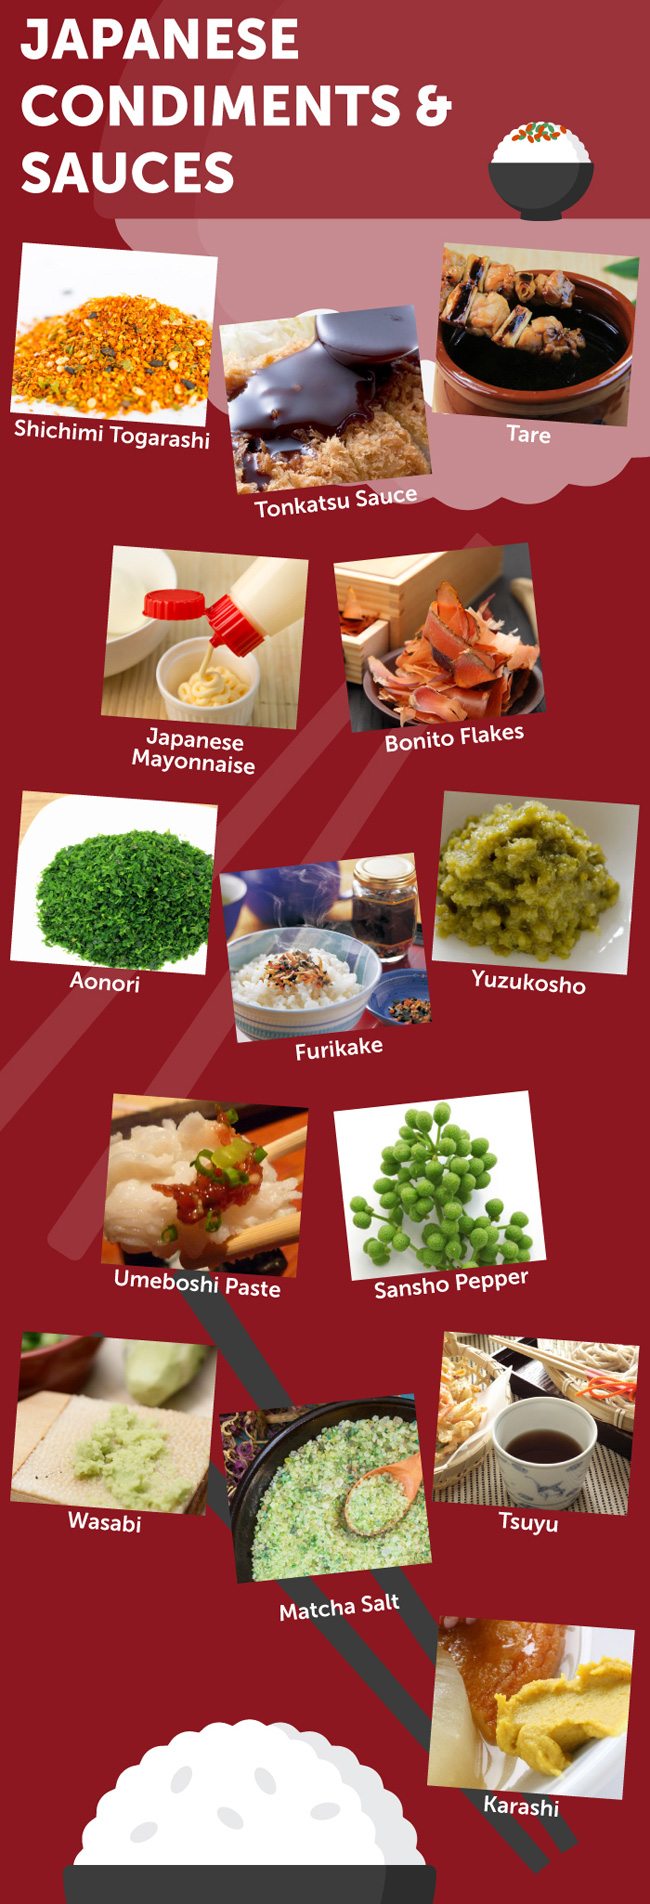 Spicy Seasonings & Ingredients: Your (Very) Hot Guide